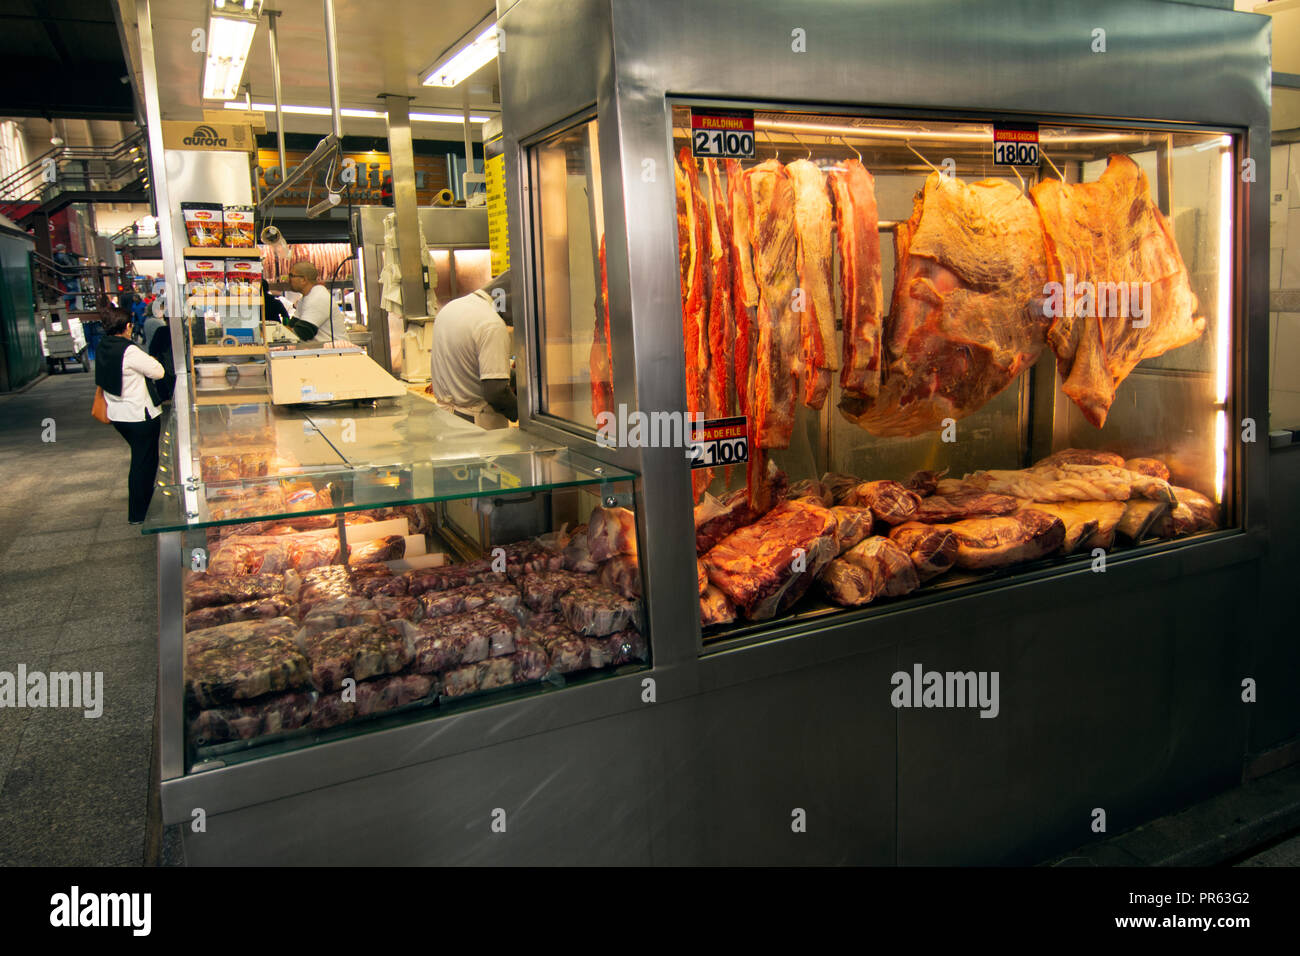 Butchery stall, Municipal Market, Sao Paulo, Brazil Stock Photo